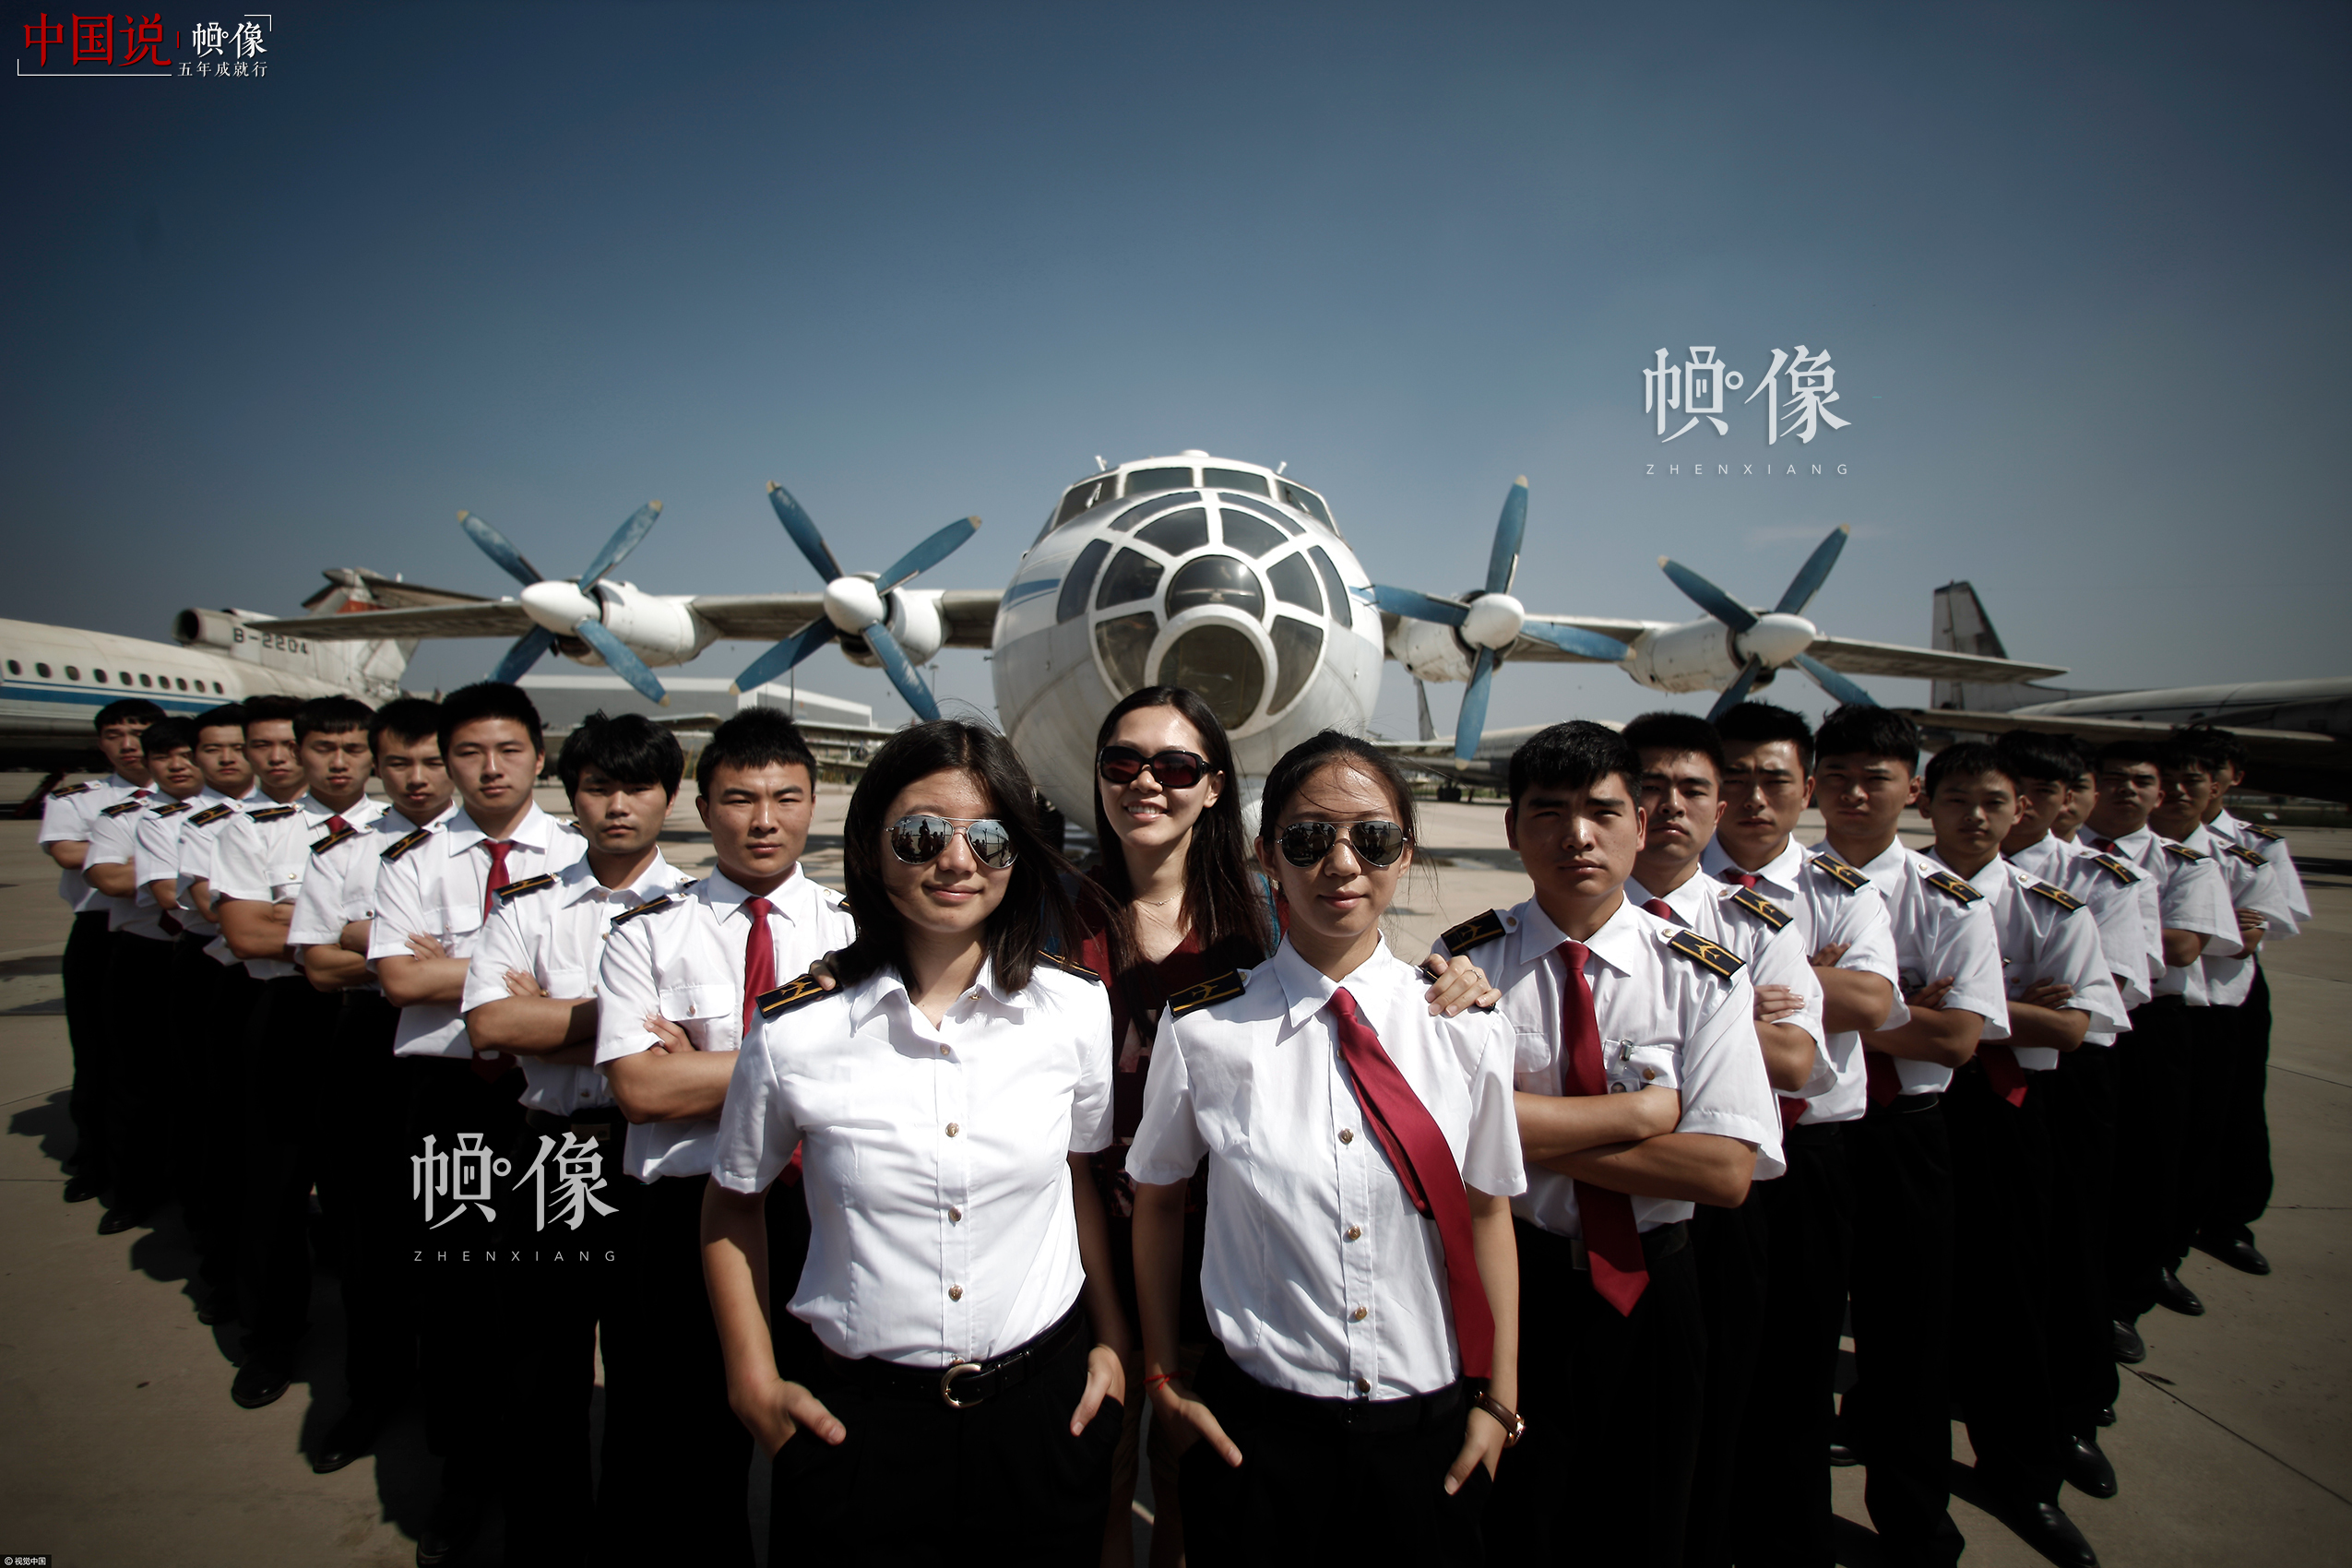 2015年06月11日，天津，一年一度的畢業季如約而至，學子們紛紛在校園內拍攝畢業照,為青春留下最美的記憶。中國民航大學3位90後美女飛行員畢業生身著統一制服，在校園內拍攝個性畢業照，霸氣十足。視覺中國供圖